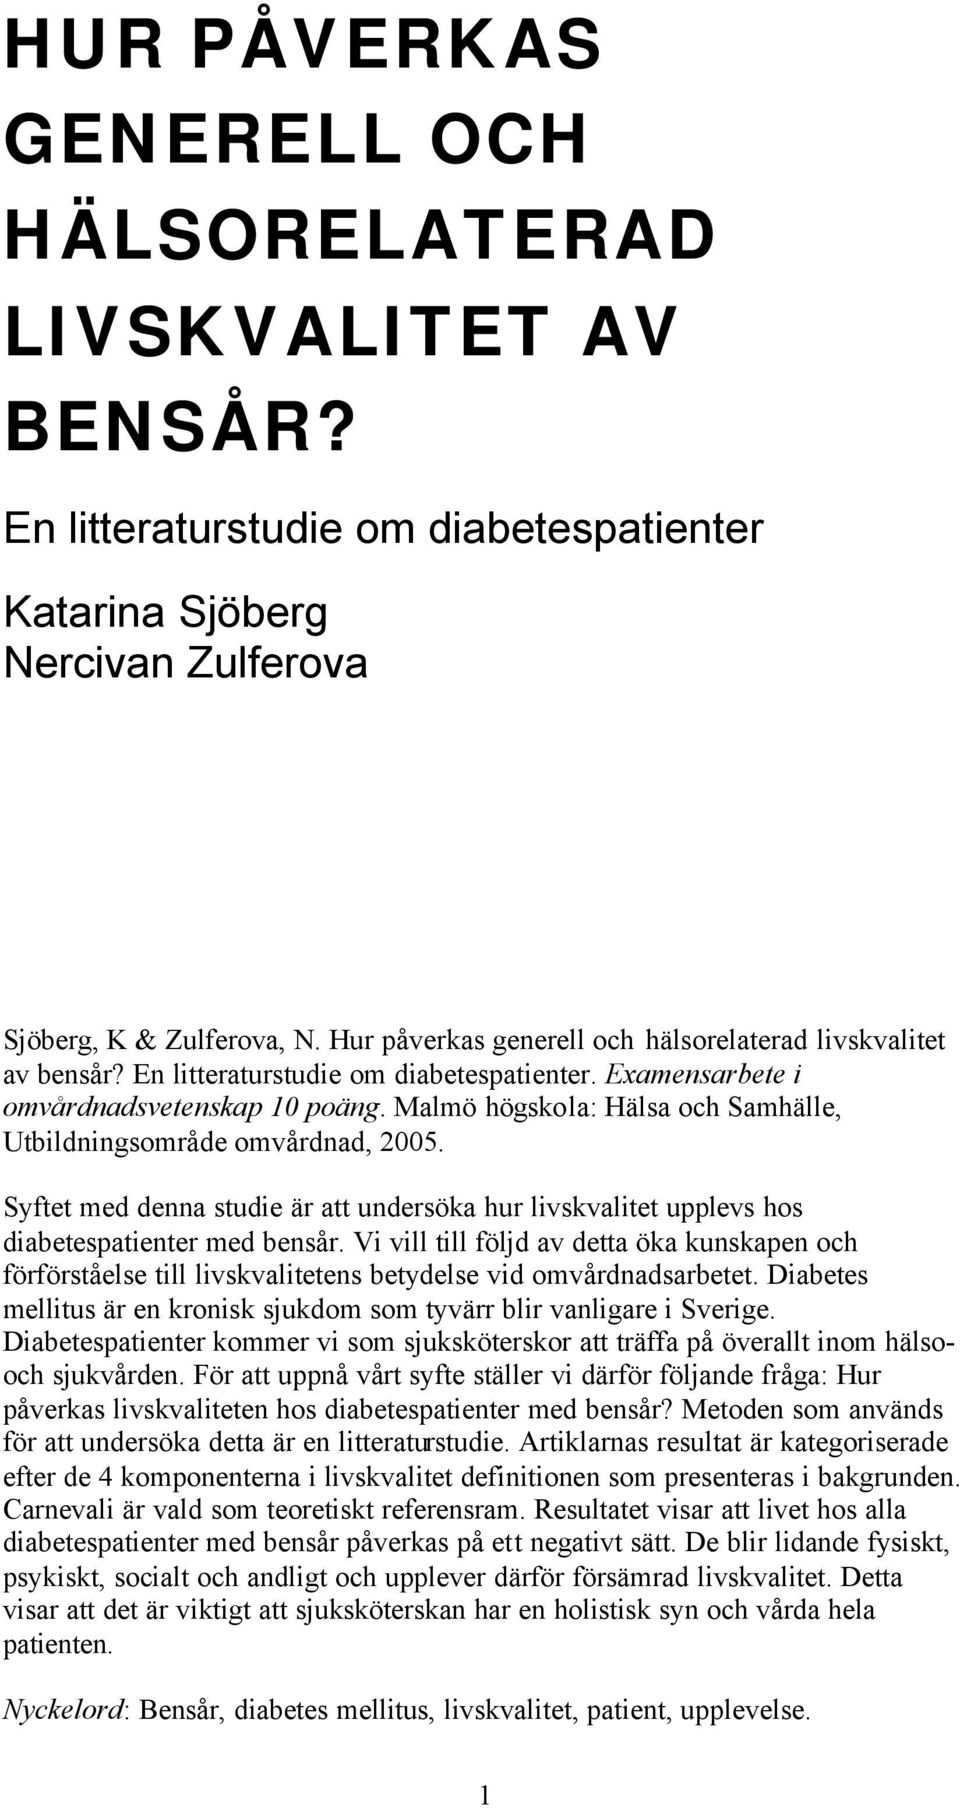 Malmö högskola: Hälsa och Samhälle, Utbildningsområde omvårdnad, 2005. Syftet med denna studie är att undersöka hur livskvalitet upplevs hos diabetespatienter med bensår.